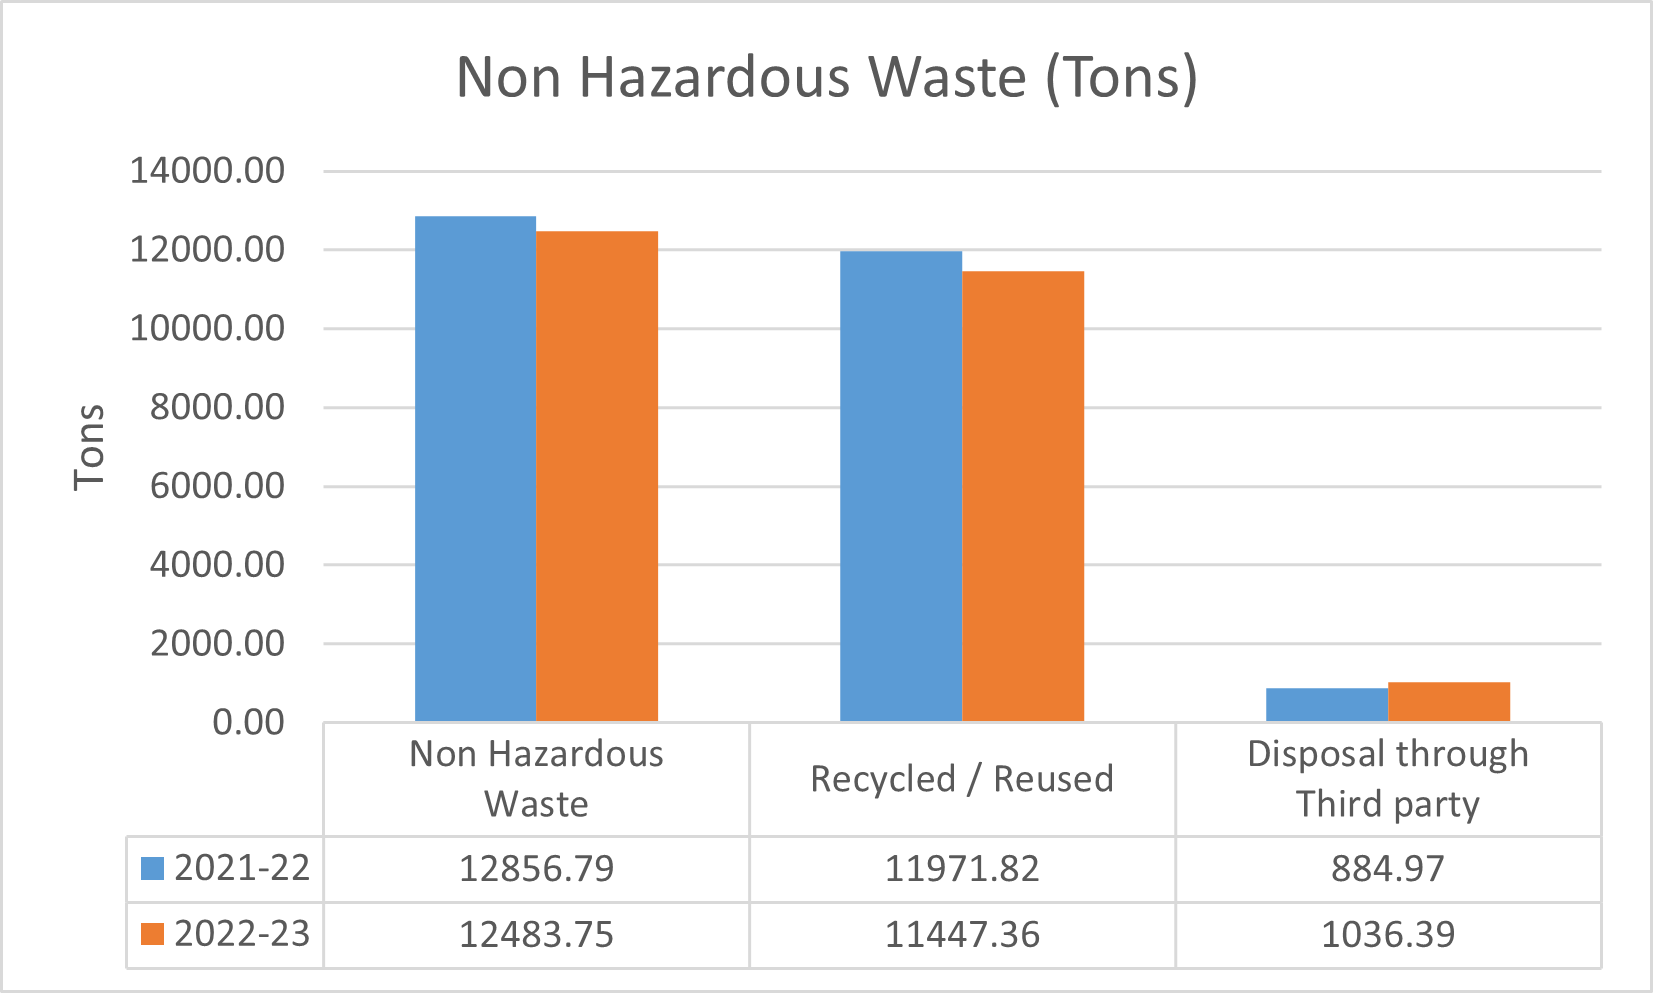 Non-Hazardous Waste